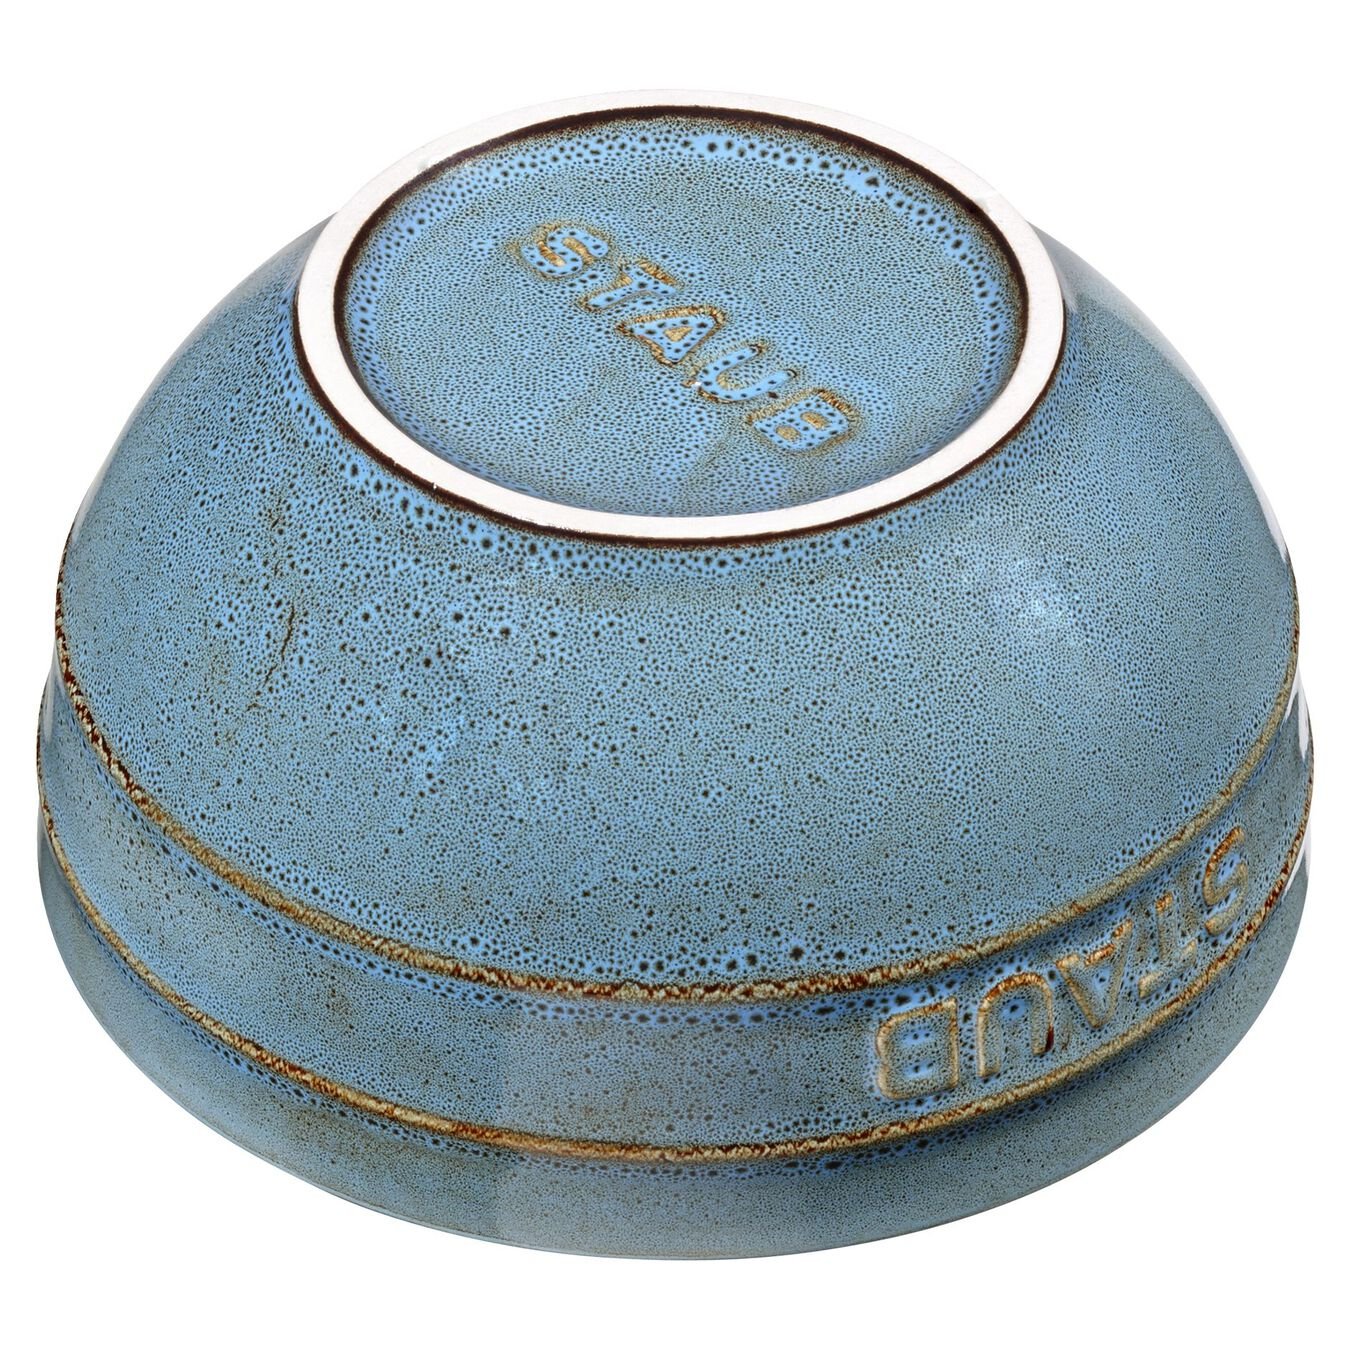 14 cm round Ceramic Bowl ancient-turquoise,,large 2